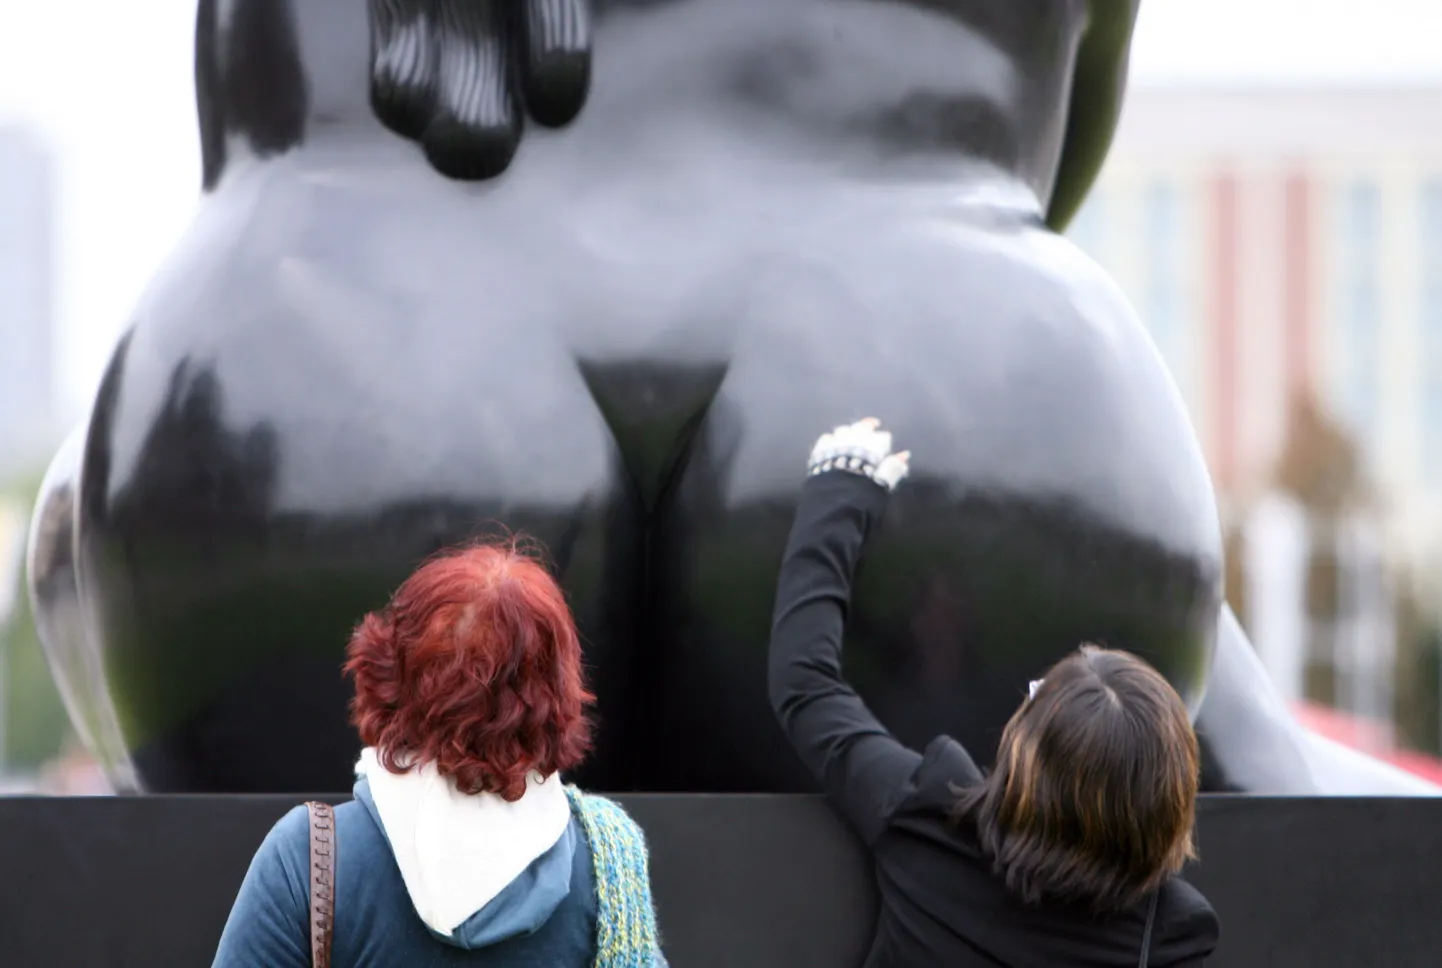 Turistid uurimas Colombia kunstniku Fernando Botero teost «Seated Woman» (Istuv naine)